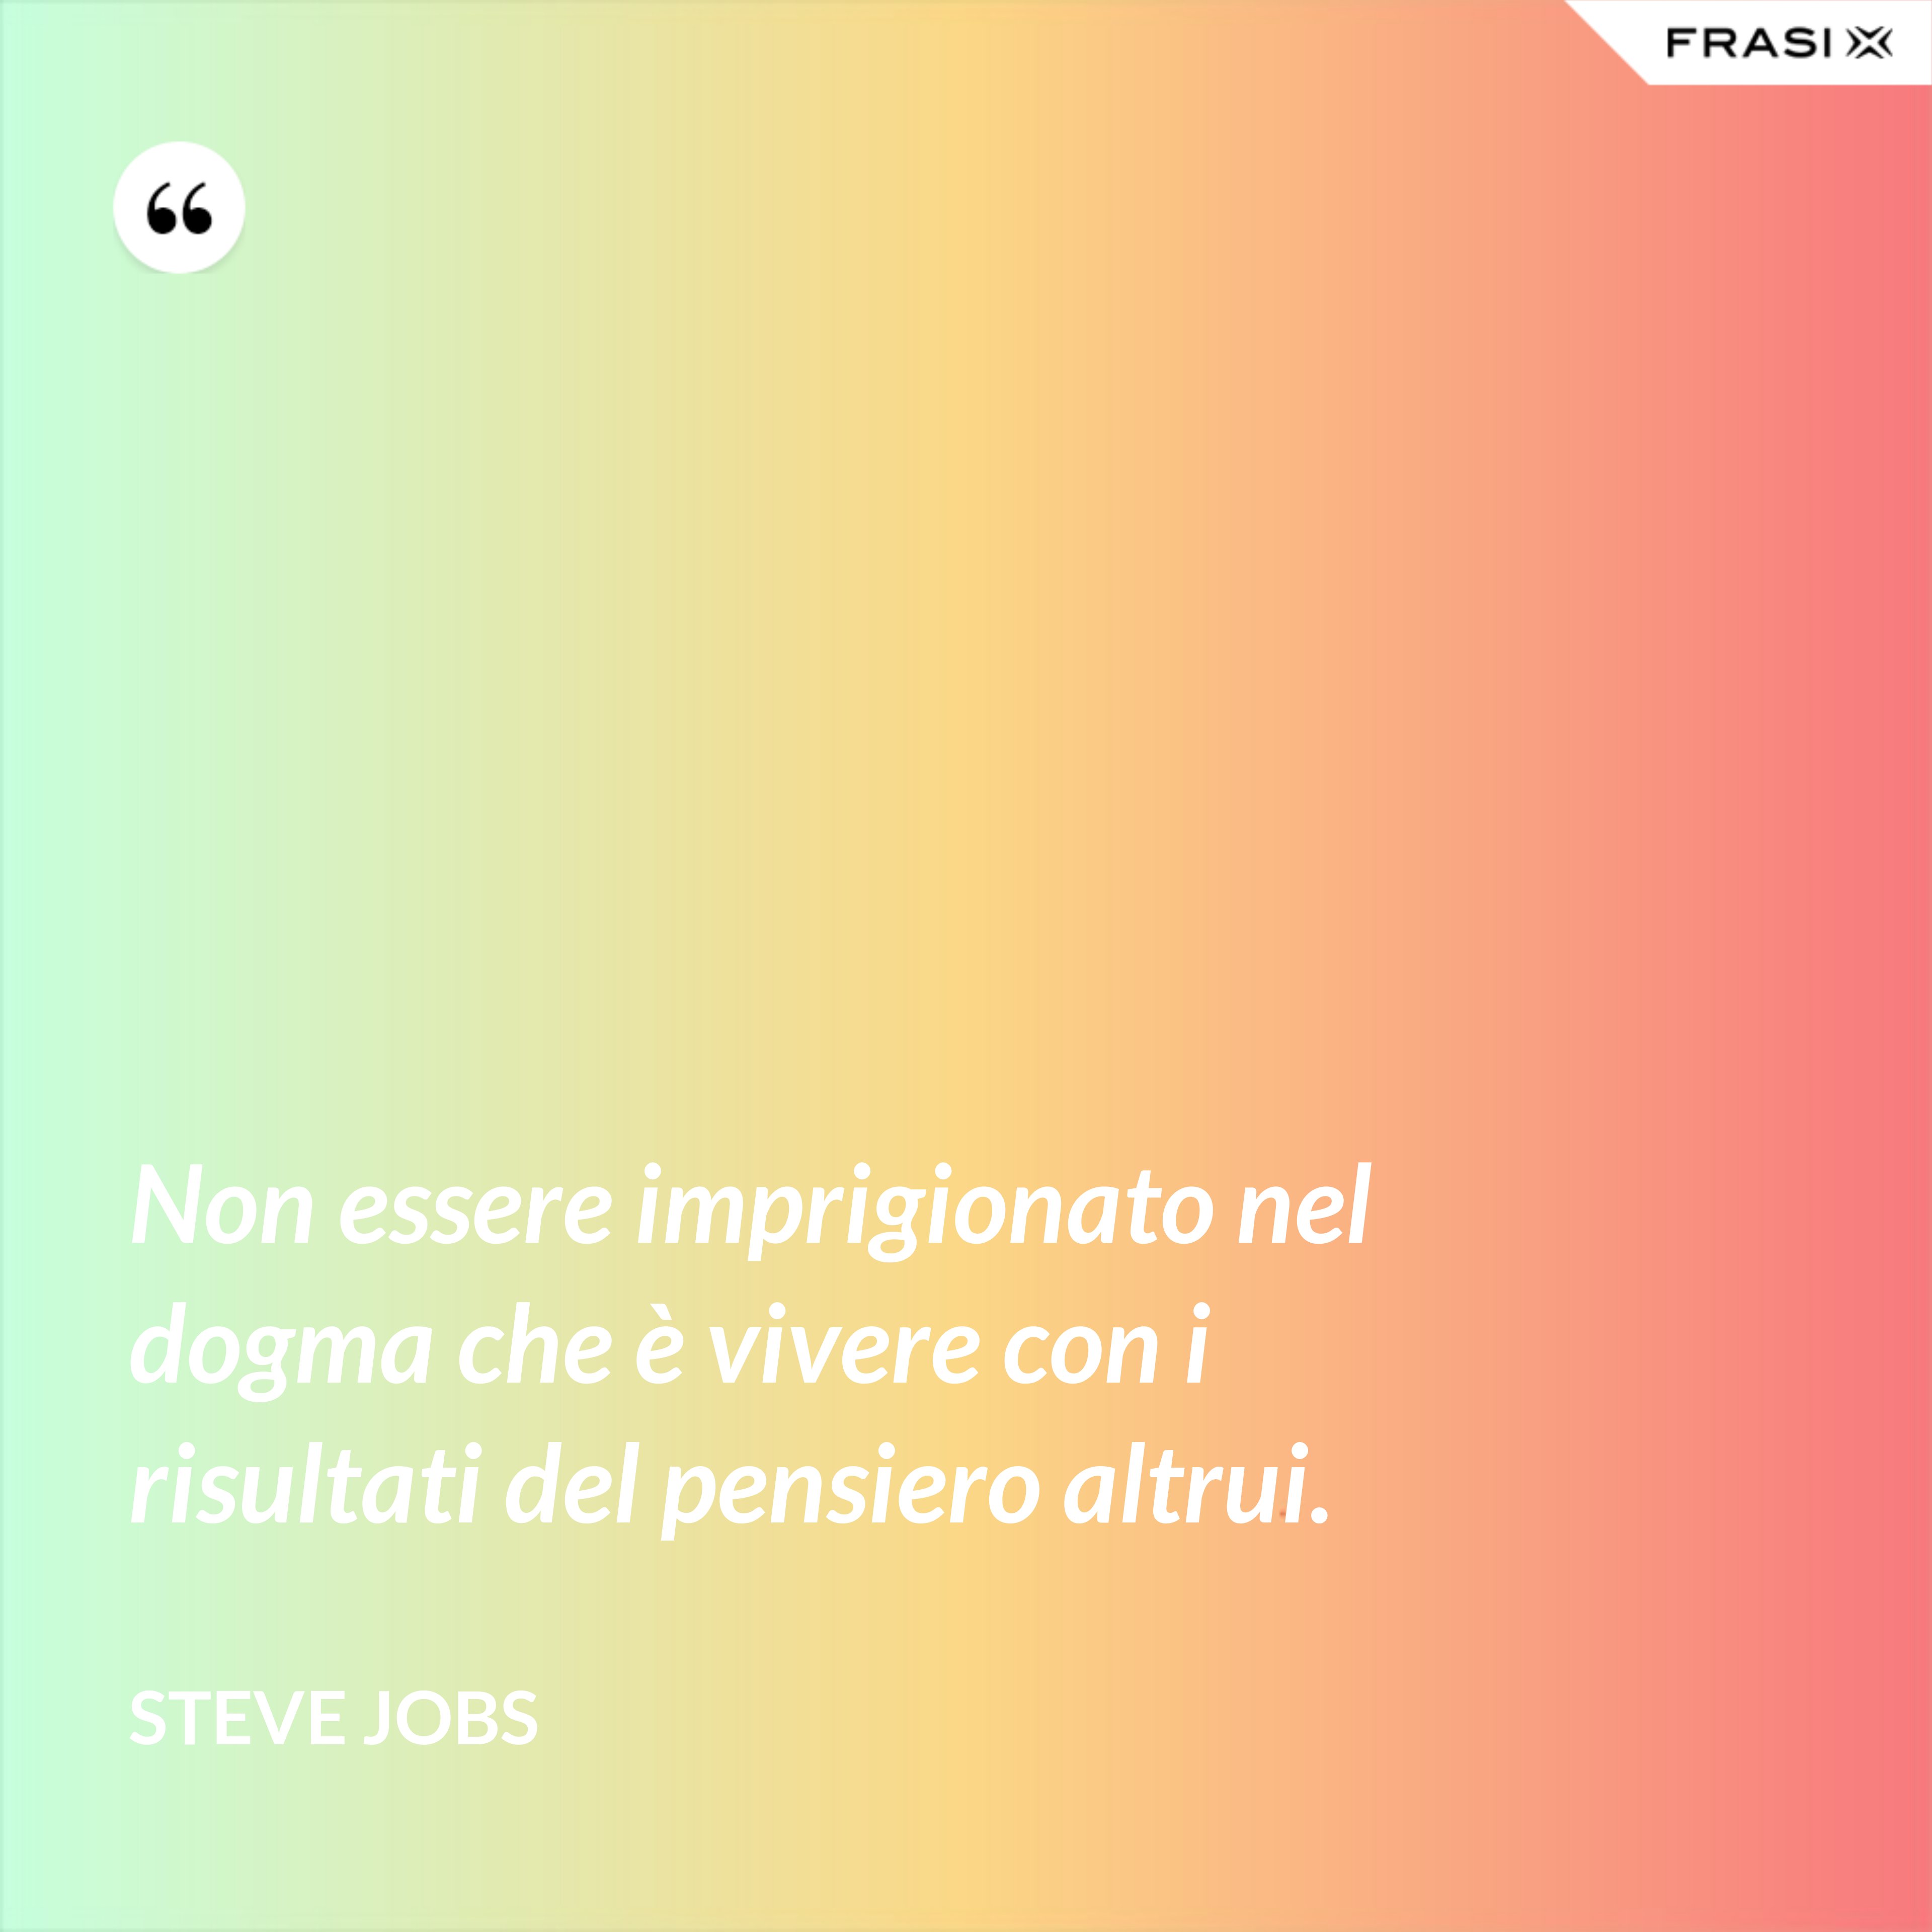 Non essere imprigionato nel dogma che è vivere con i risultati del pensiero altrui. - Steve Jobs